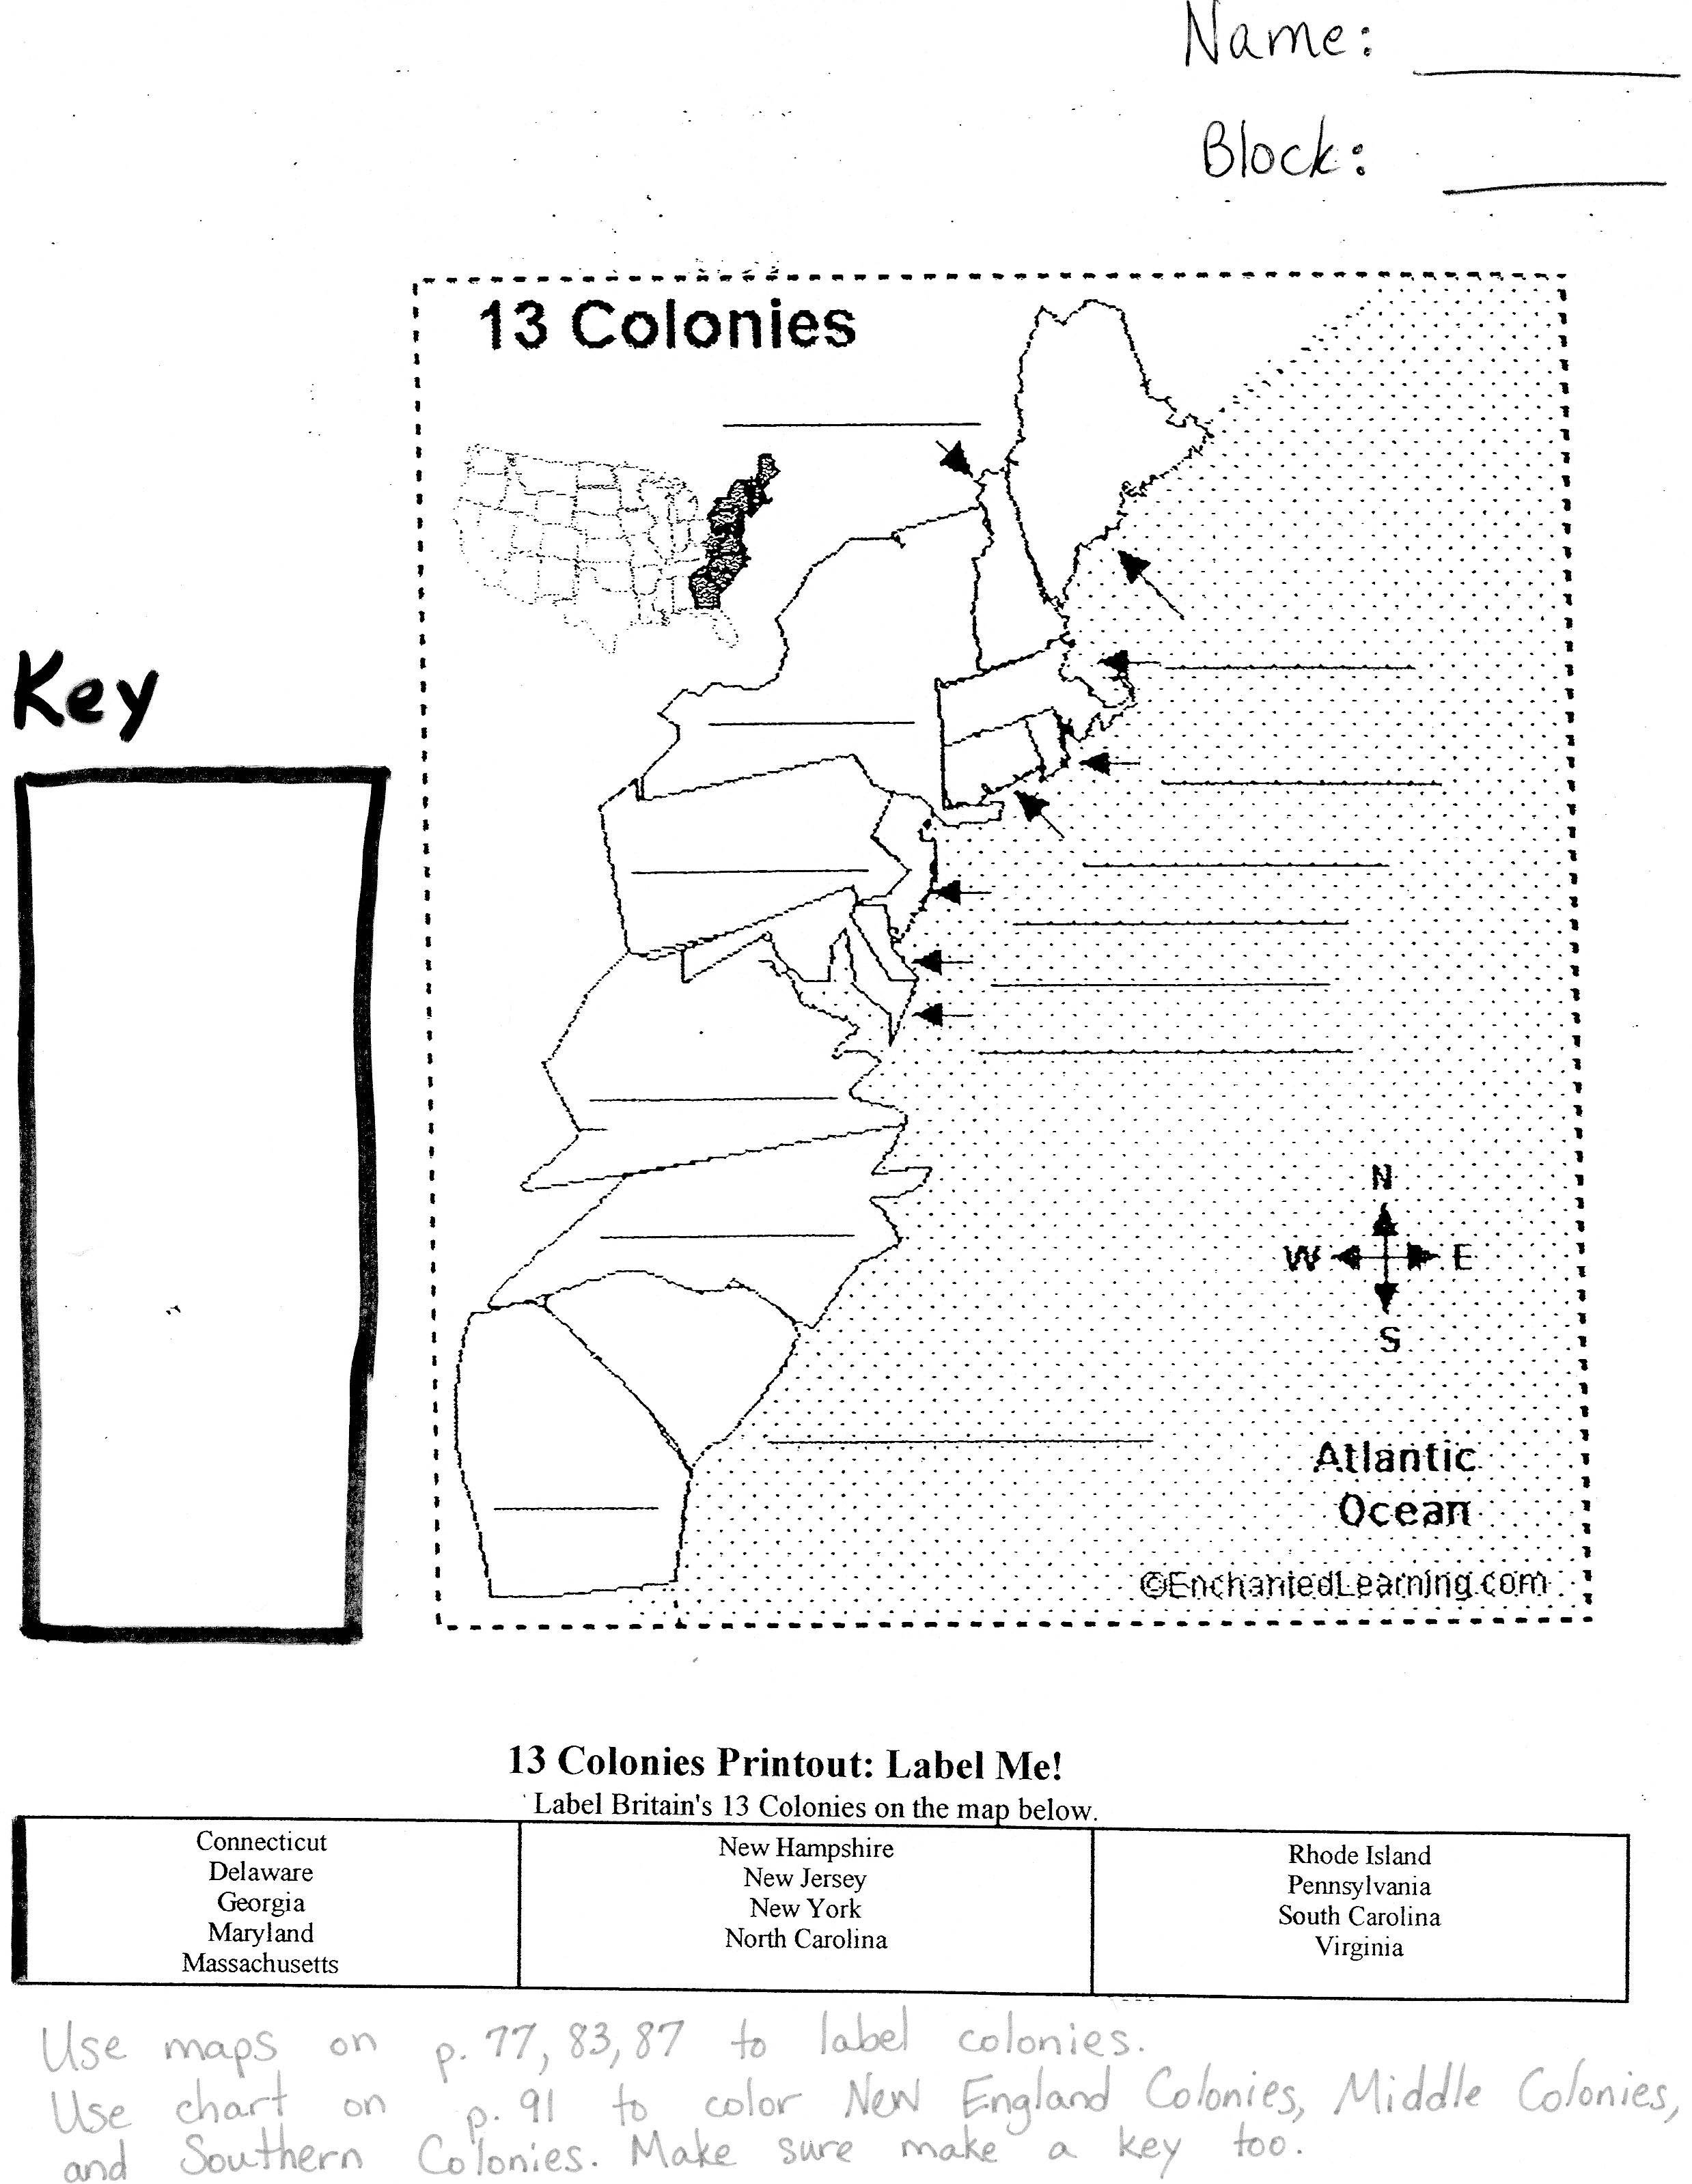 13 Colonies Map Quiz Worksheet Image